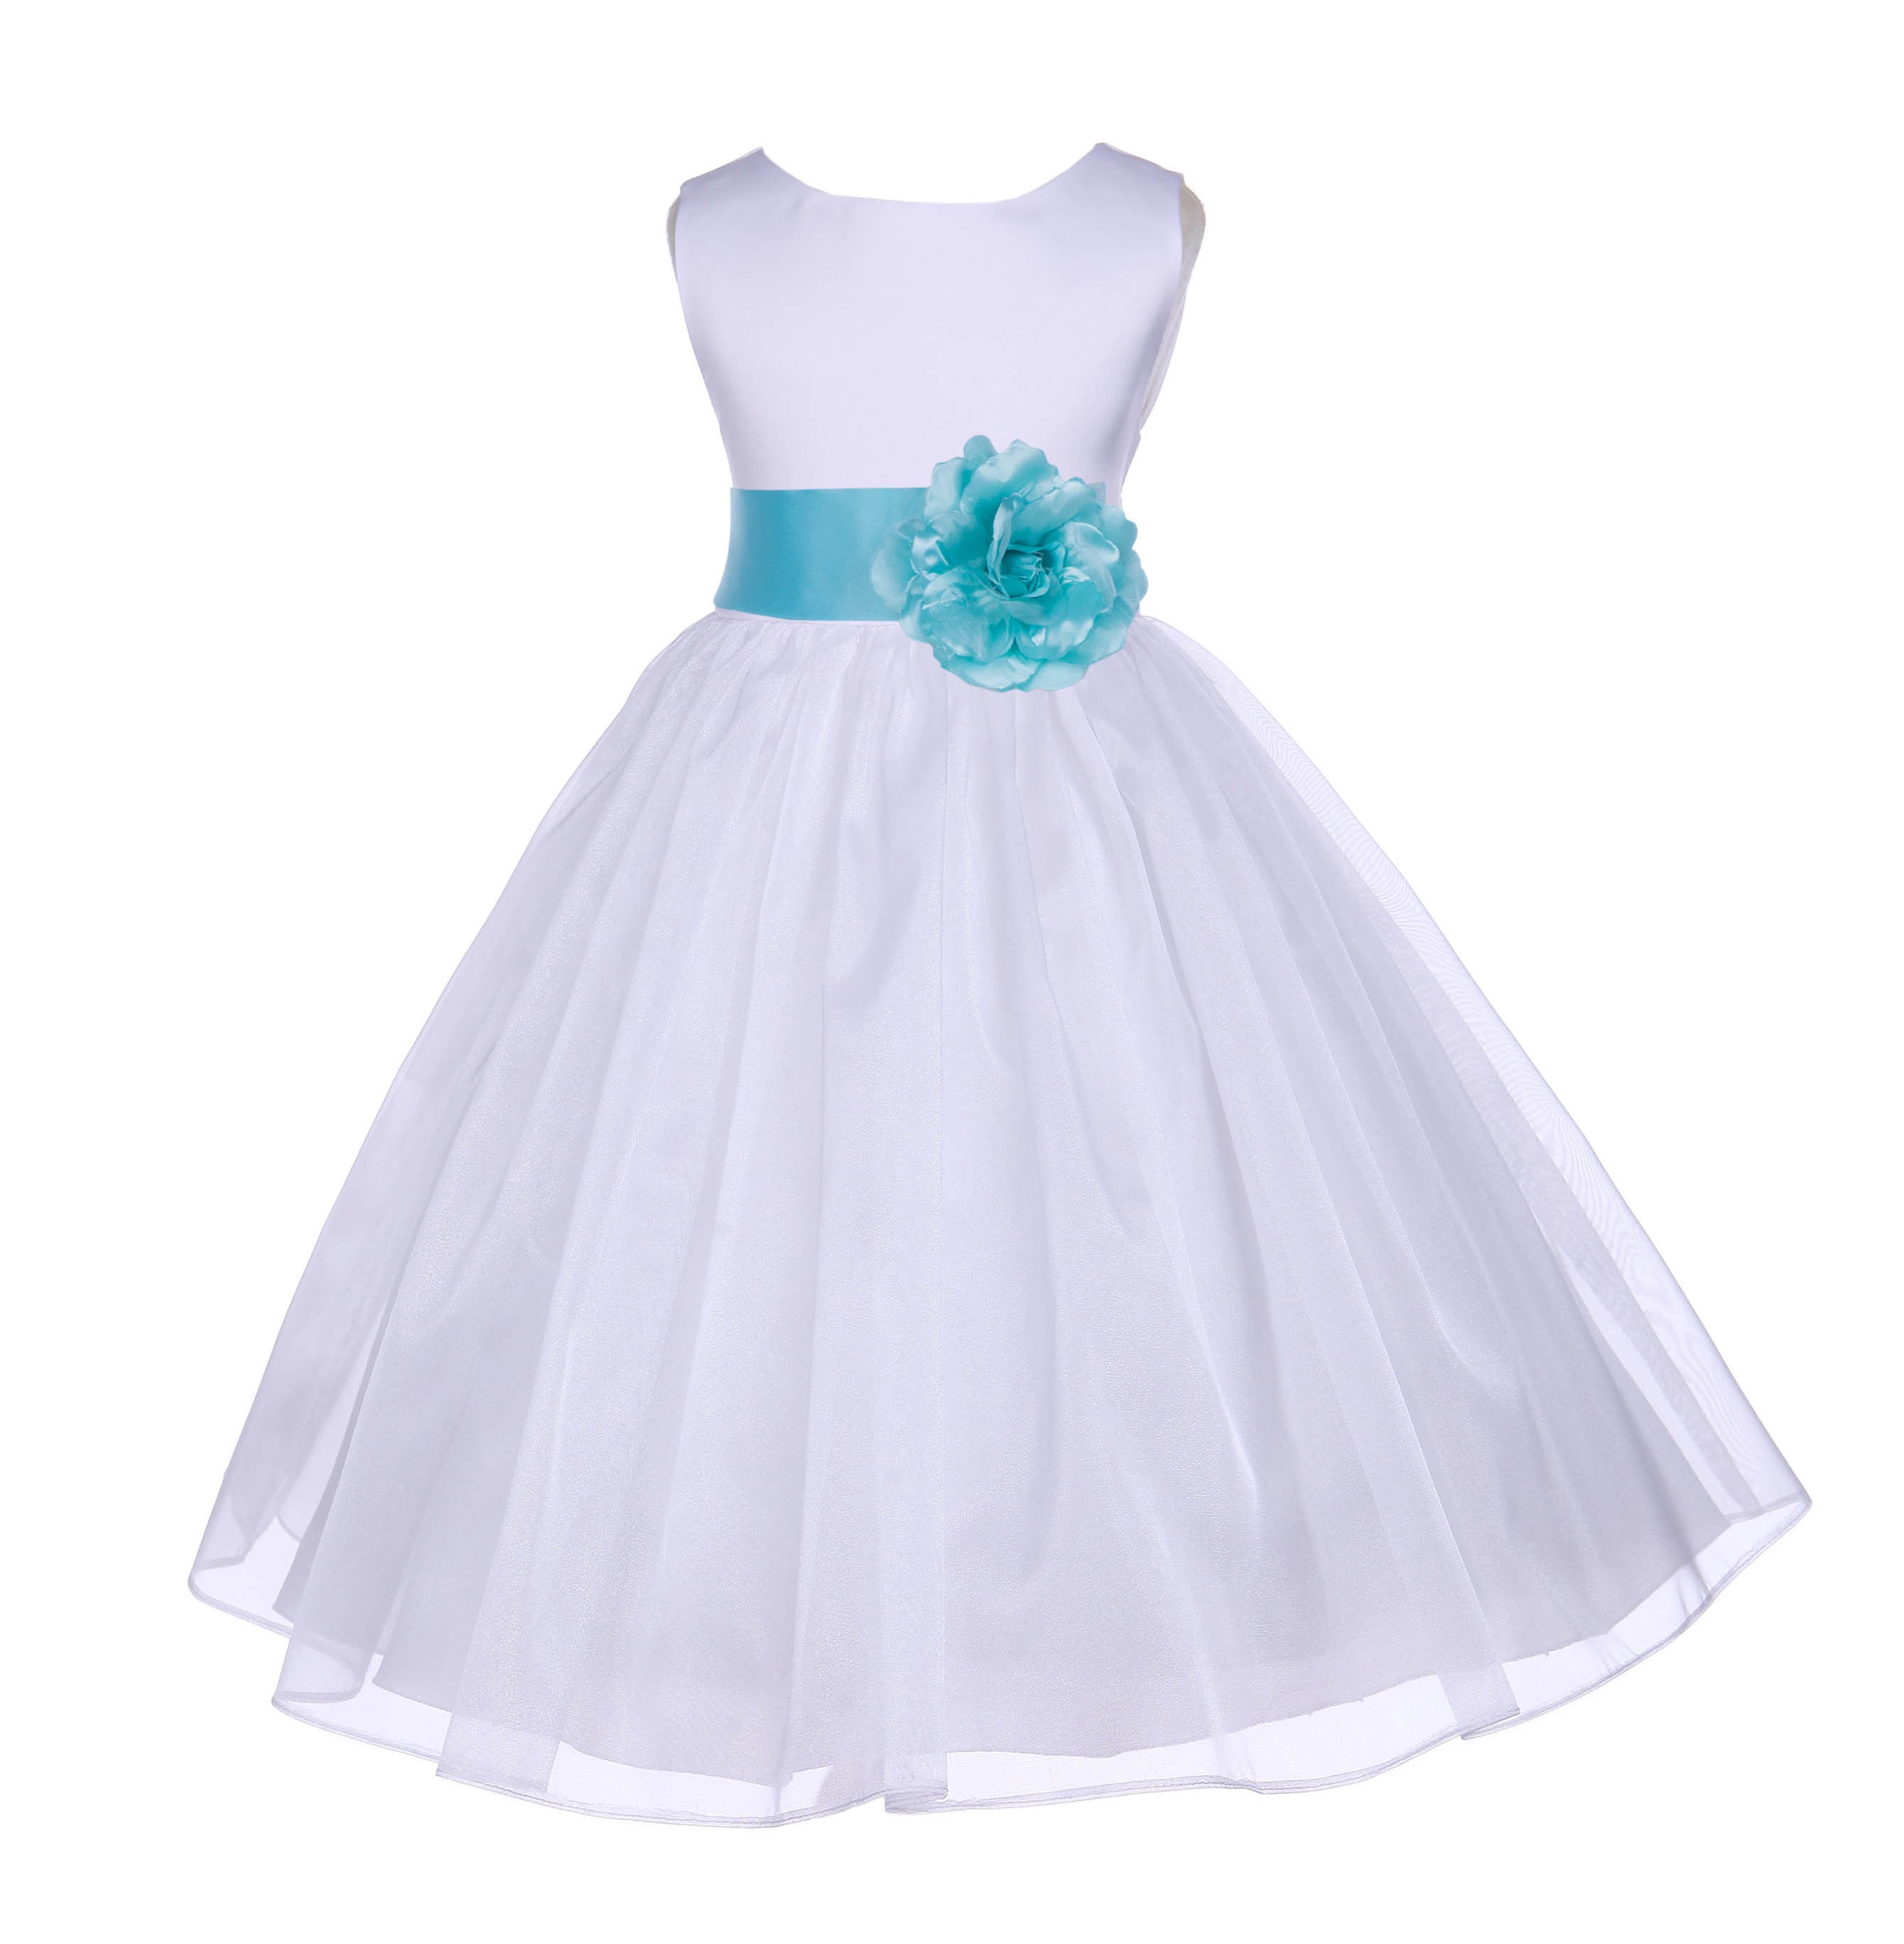 White/Spa Satin Bodice Organza Skirt Flower Girl Dress 841T